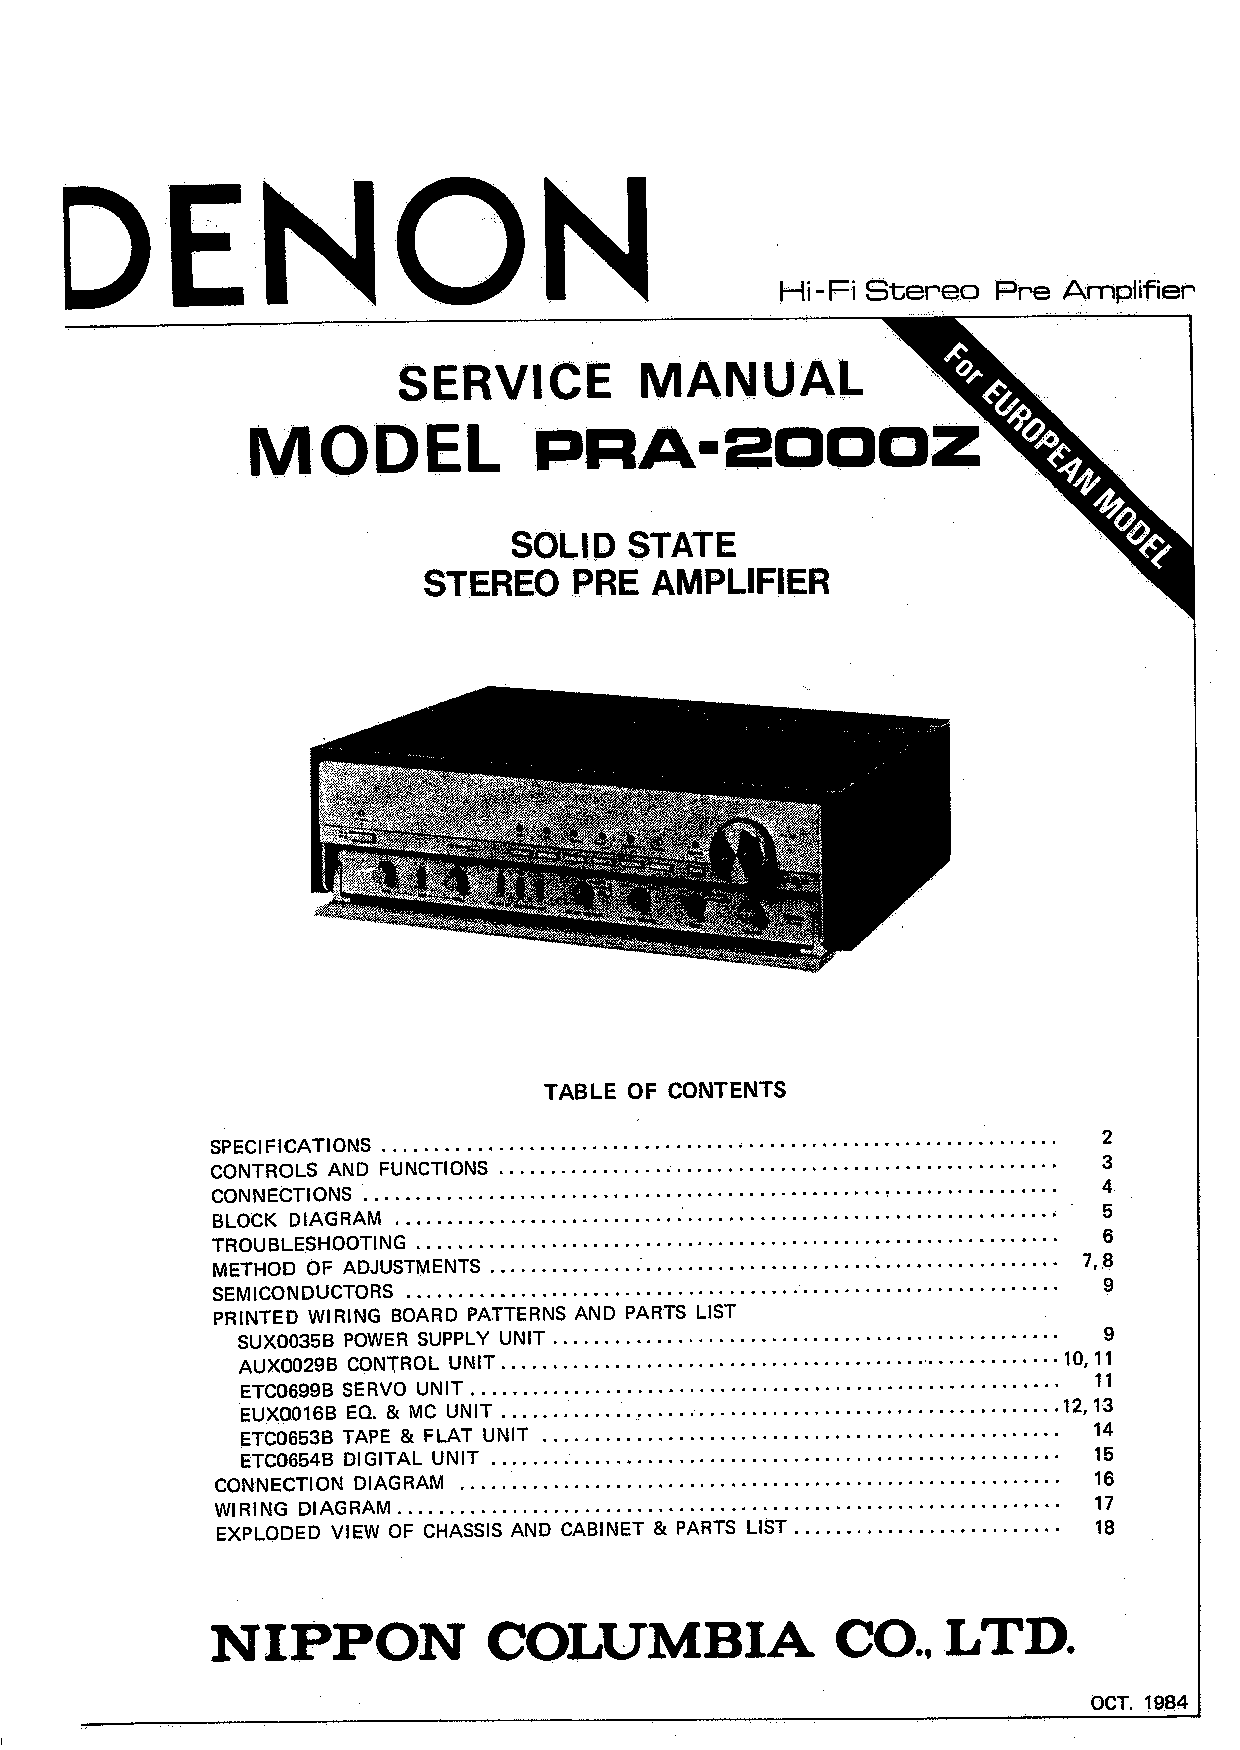 Denon PRA-2000Z Service Manual